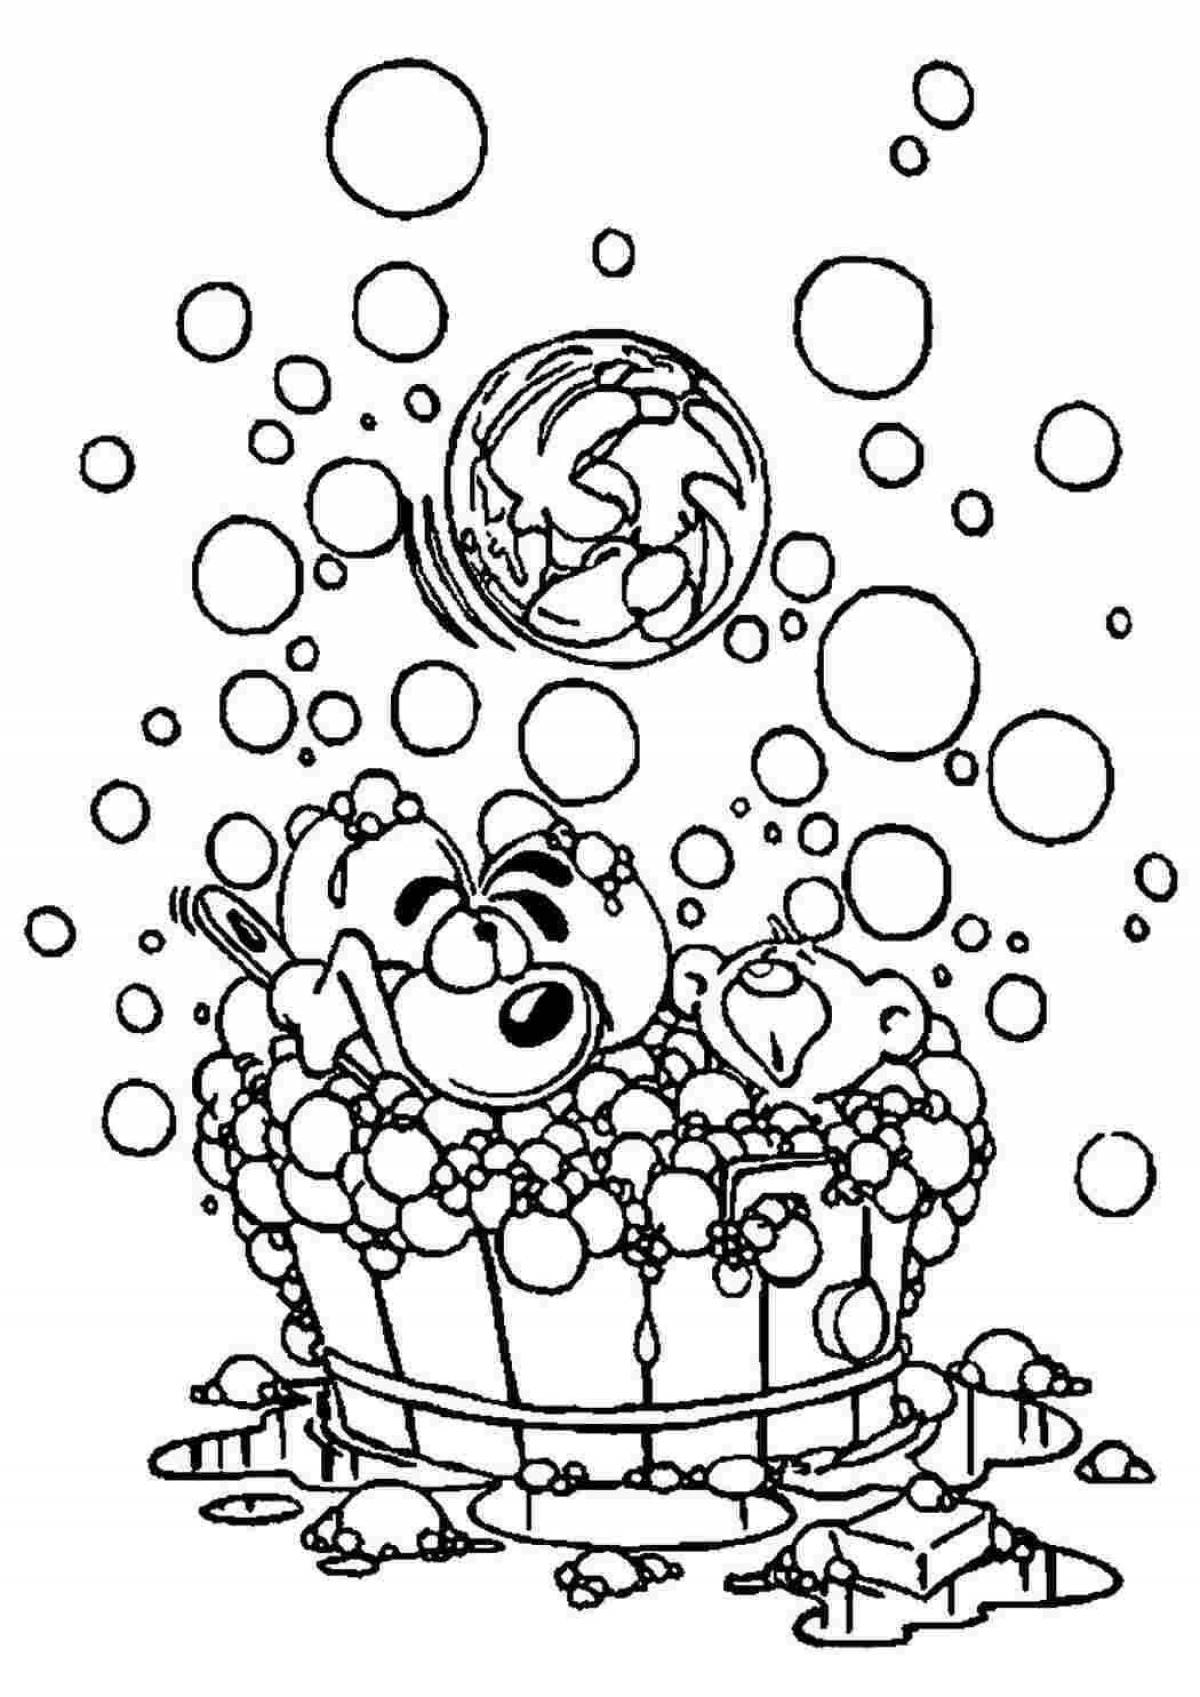 Joyful coloring page bubbles